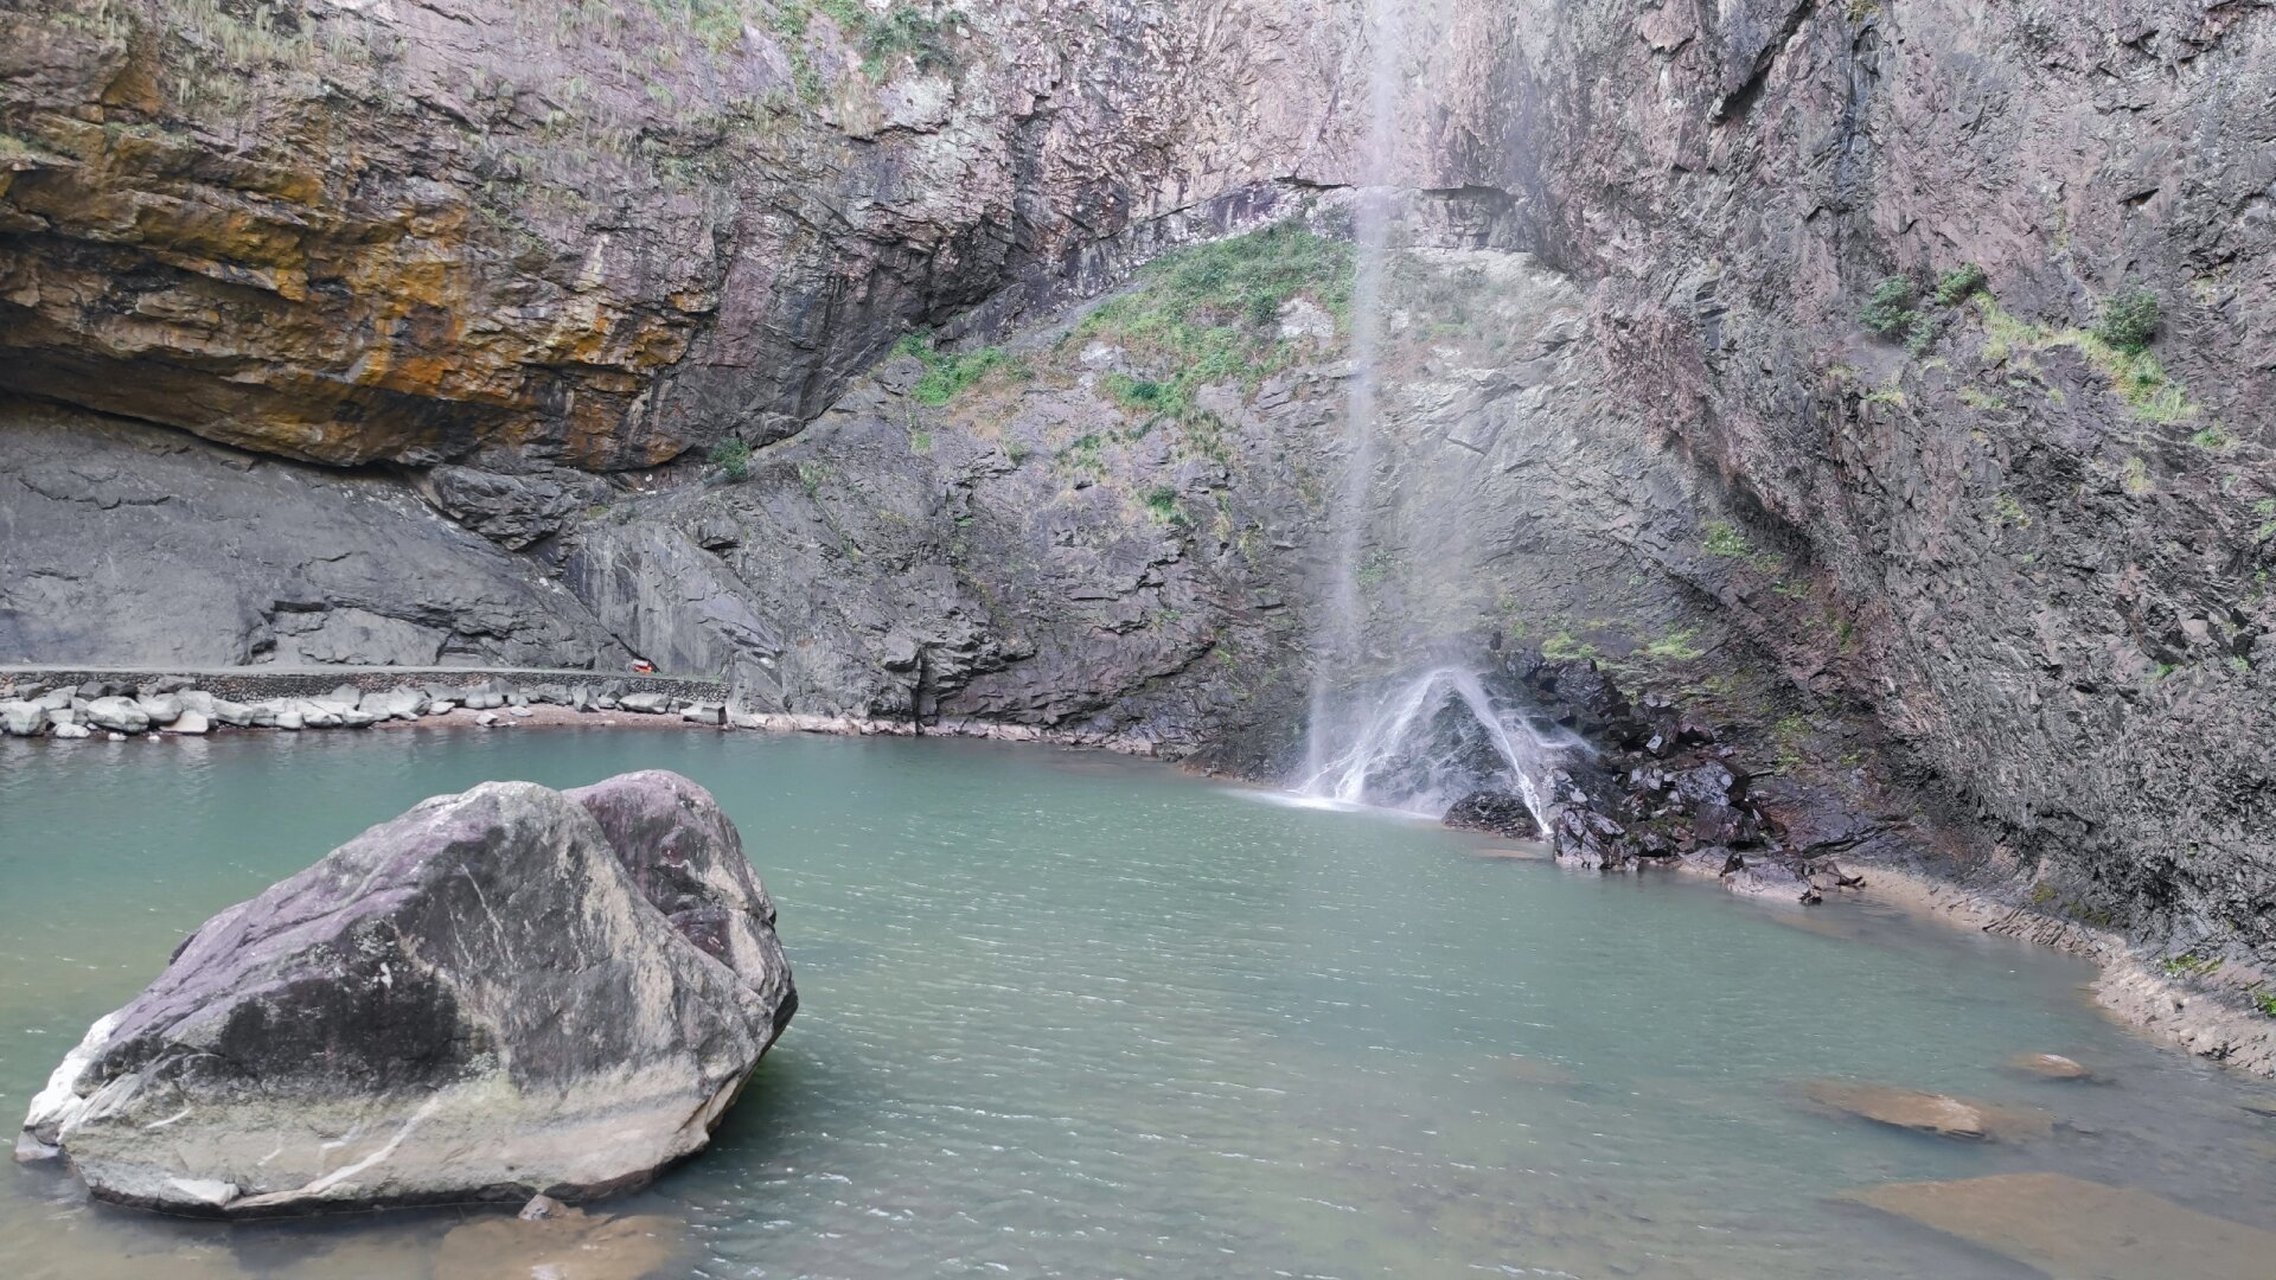 丽水青田石门洞景区 当前季节水少,石门飞瀑水量比较小,如何雨量丰沛